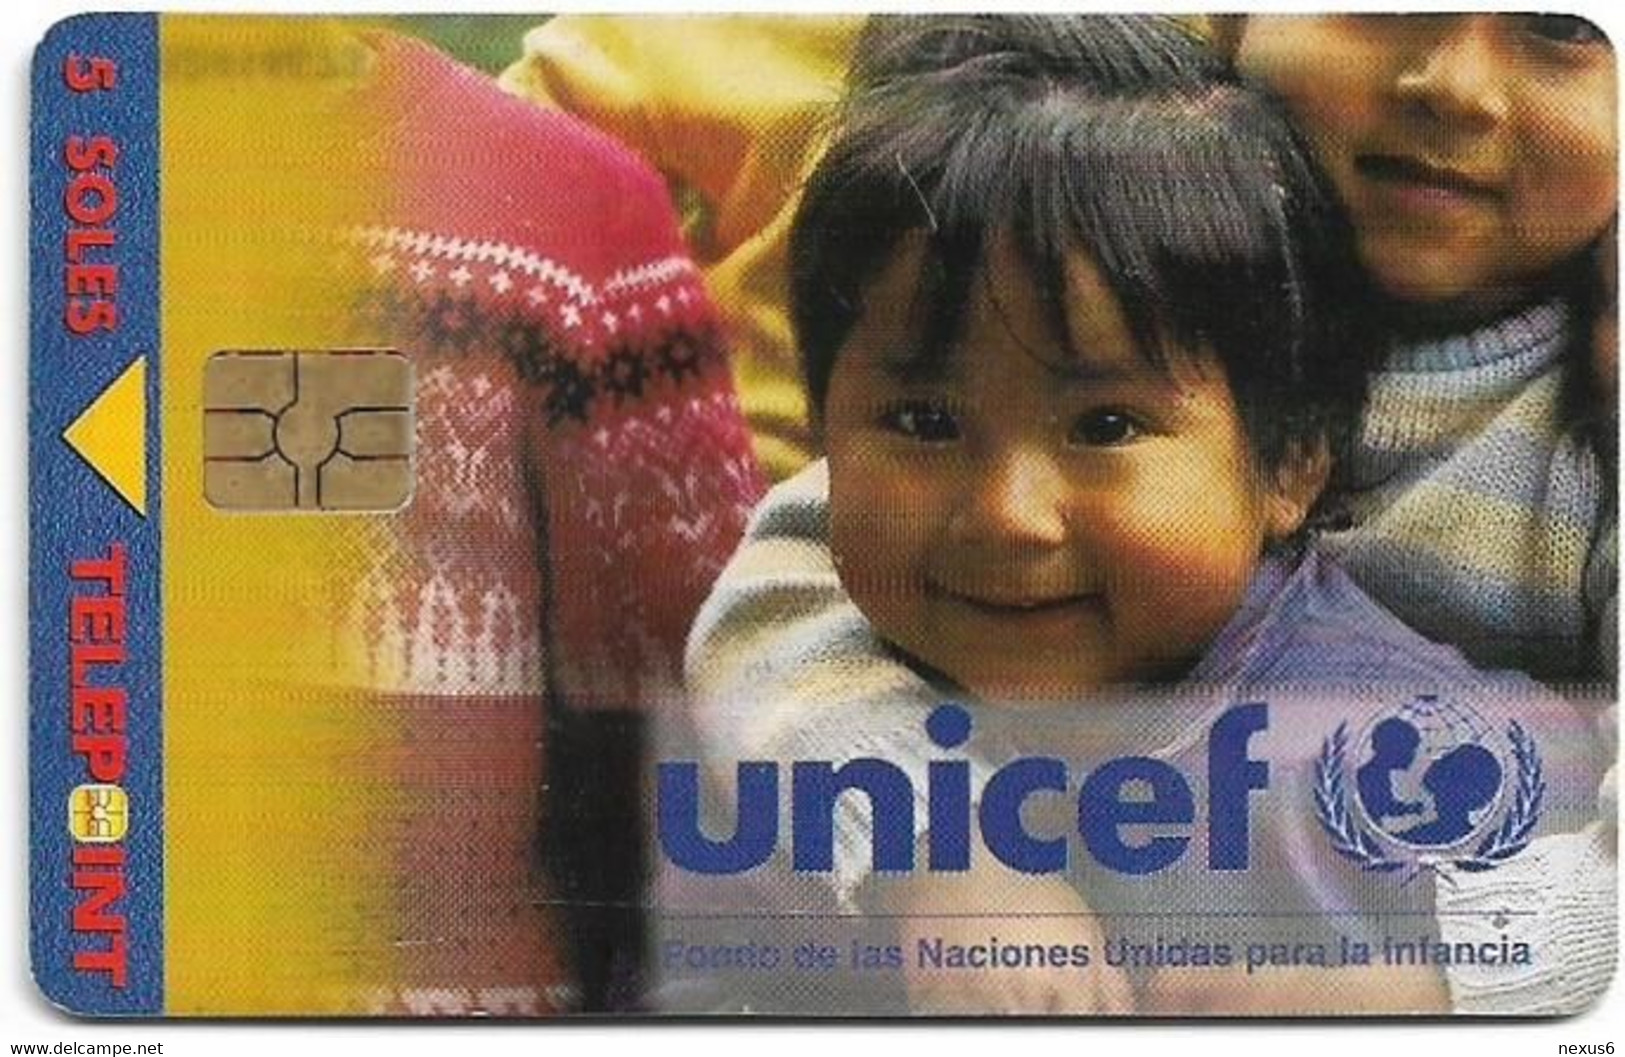 Peru - Telepoint - Unicef 1. Girls Arm In Arm, 09.1998, 5Sol, 50.000ex, Used - Peru